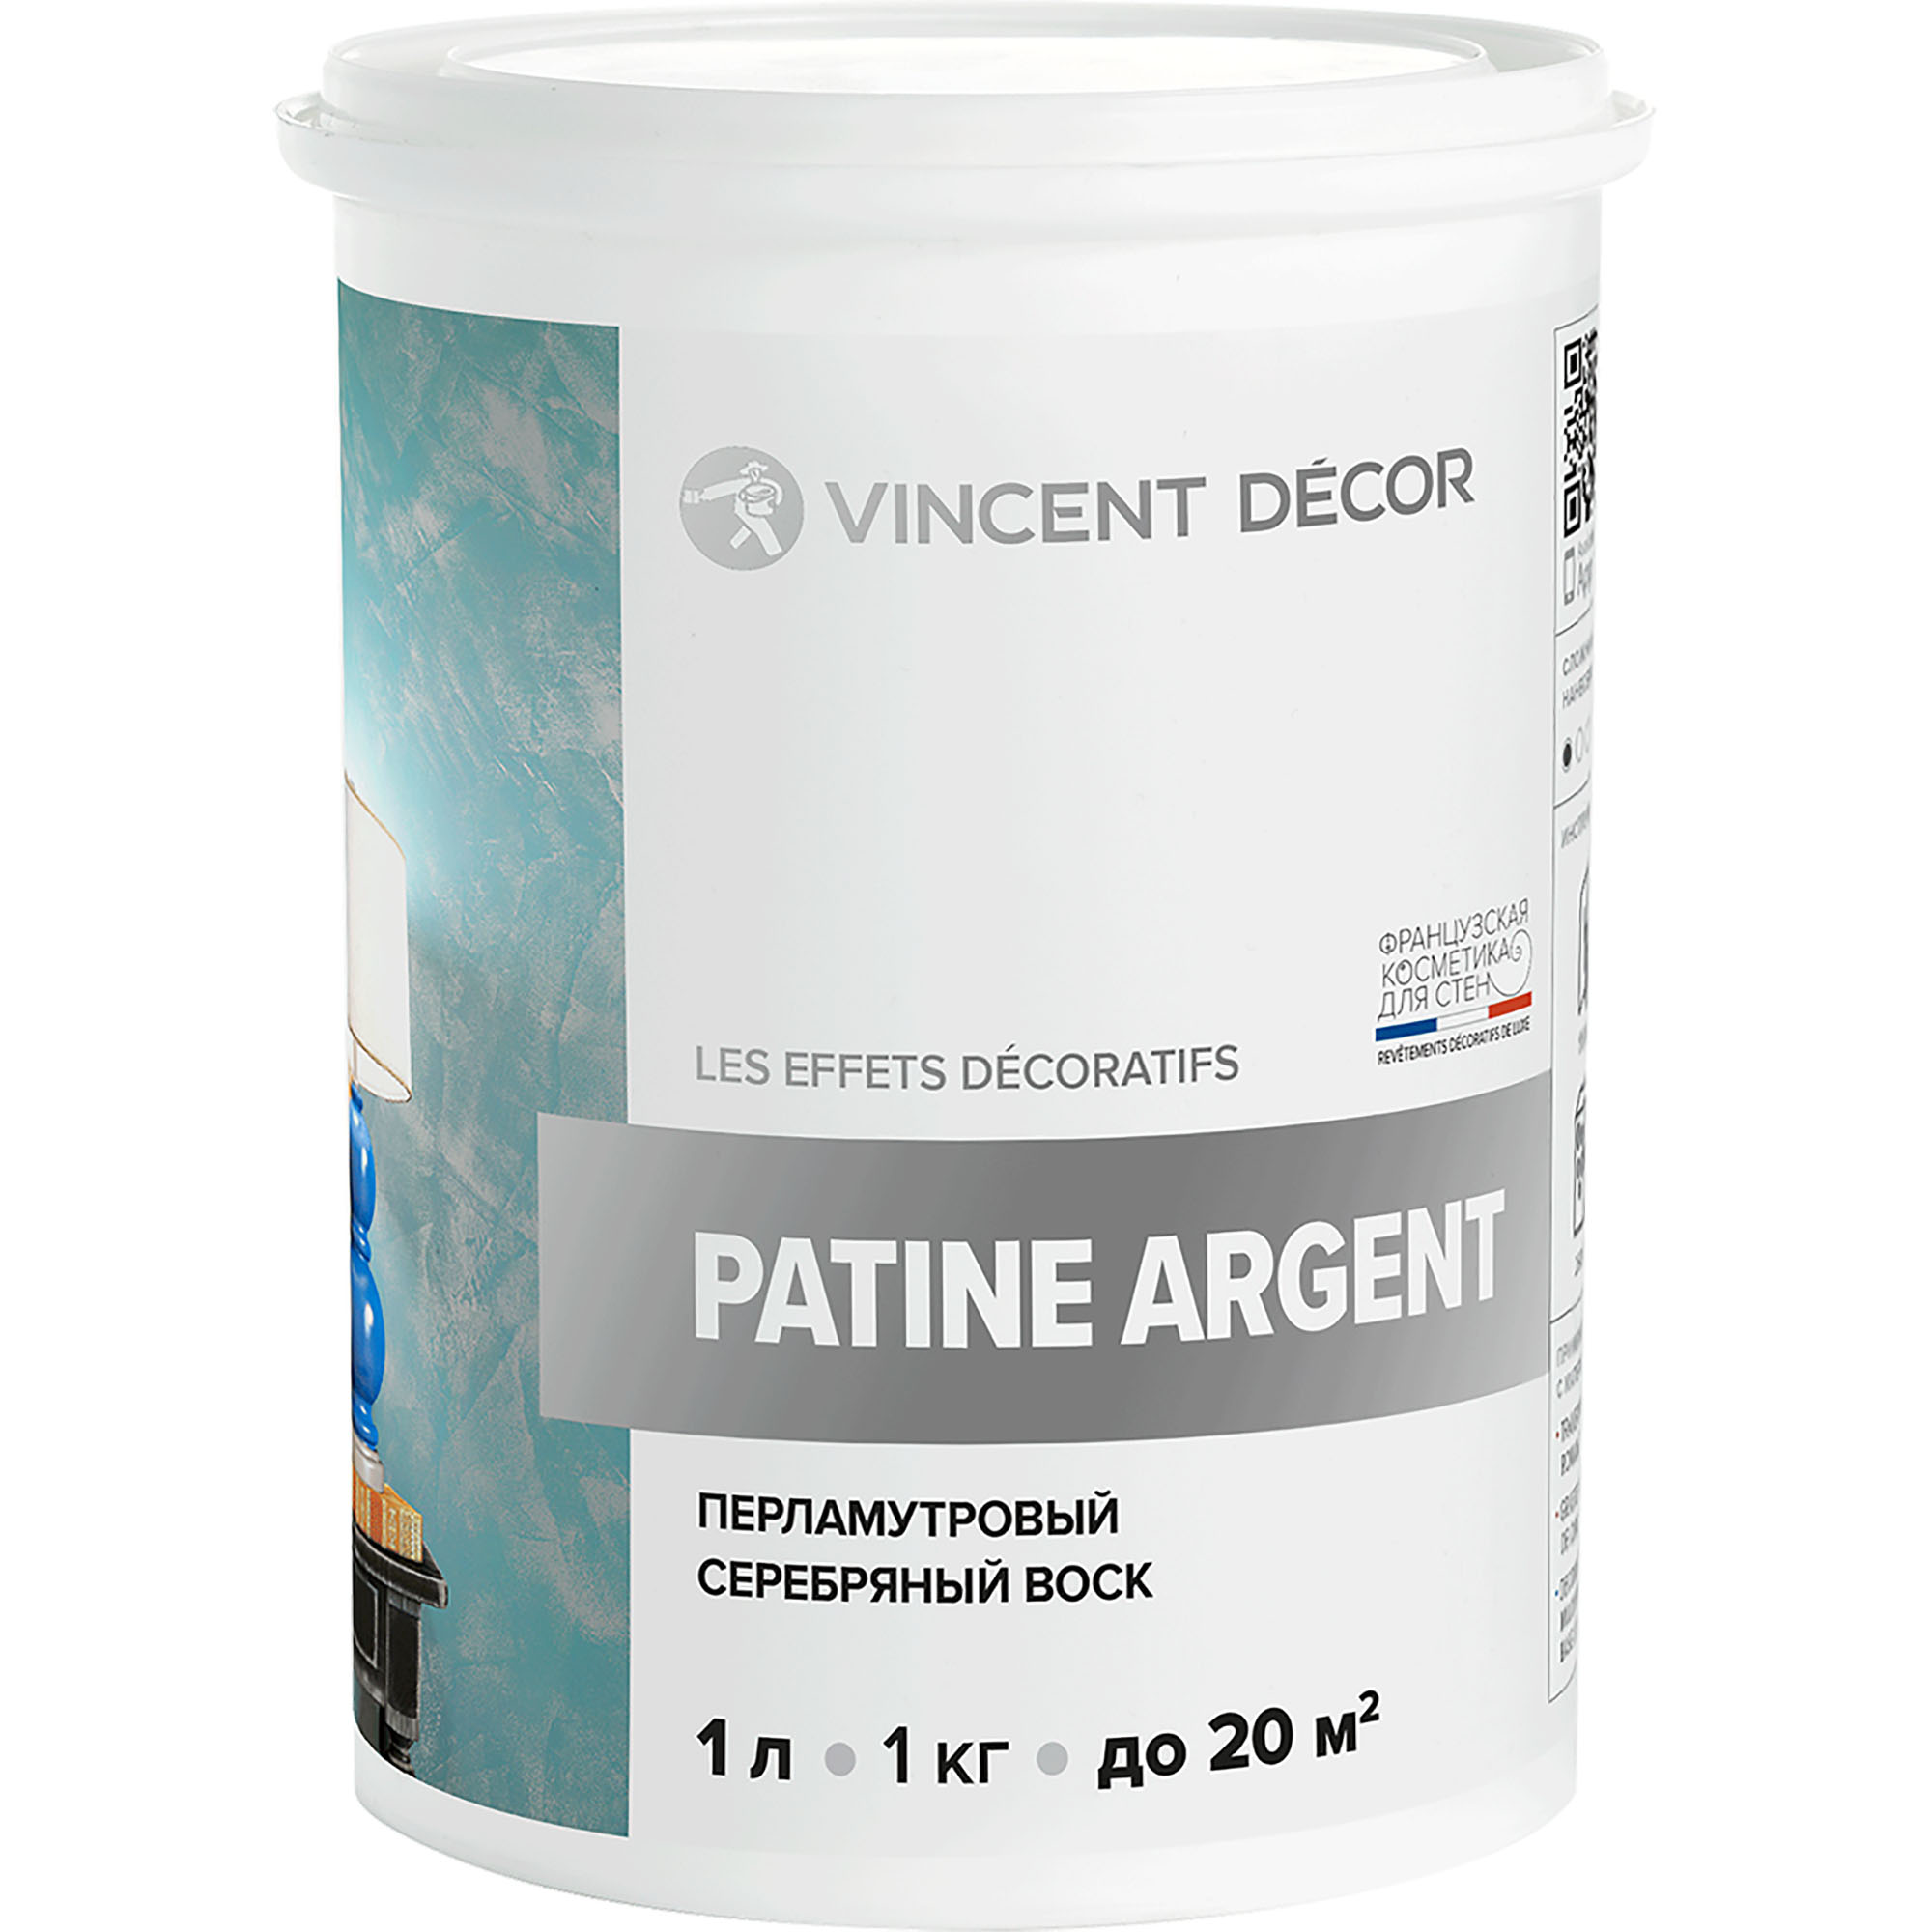 Перламутровый серебряный воск Vincent Decor Patine Argent для декоративных покрытий 1 кг трубочки для коктейля набор 12 шт перламутровый